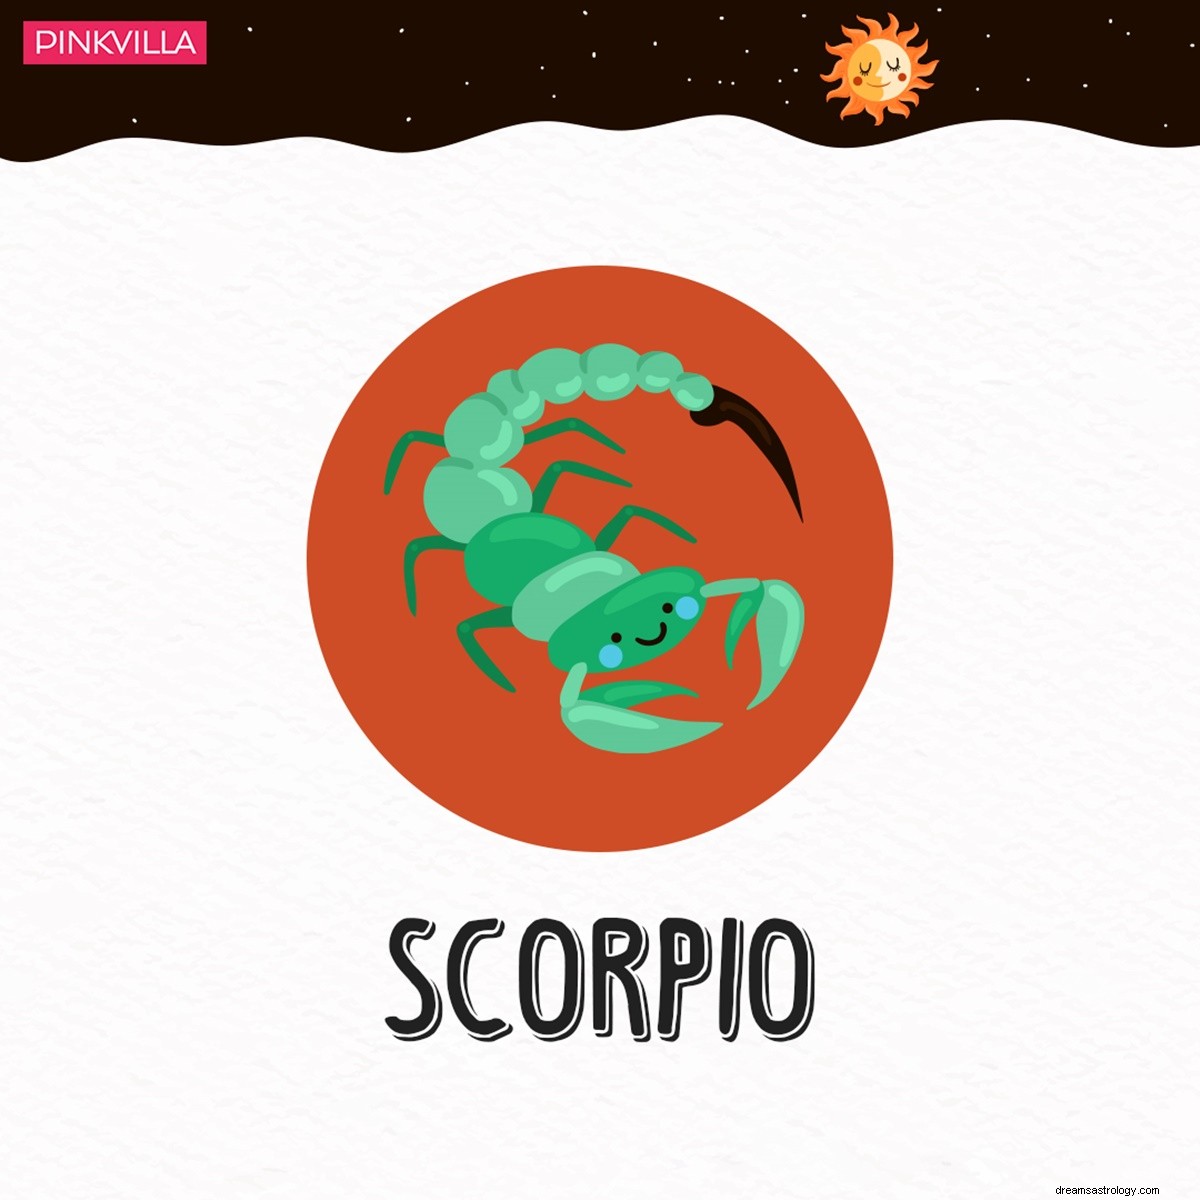 Skorpion do Wodnika:4 znaki zodiaku, które cierpią z powodu niezręcznej ciszy, gdy nie mogą prowadzić small talk 